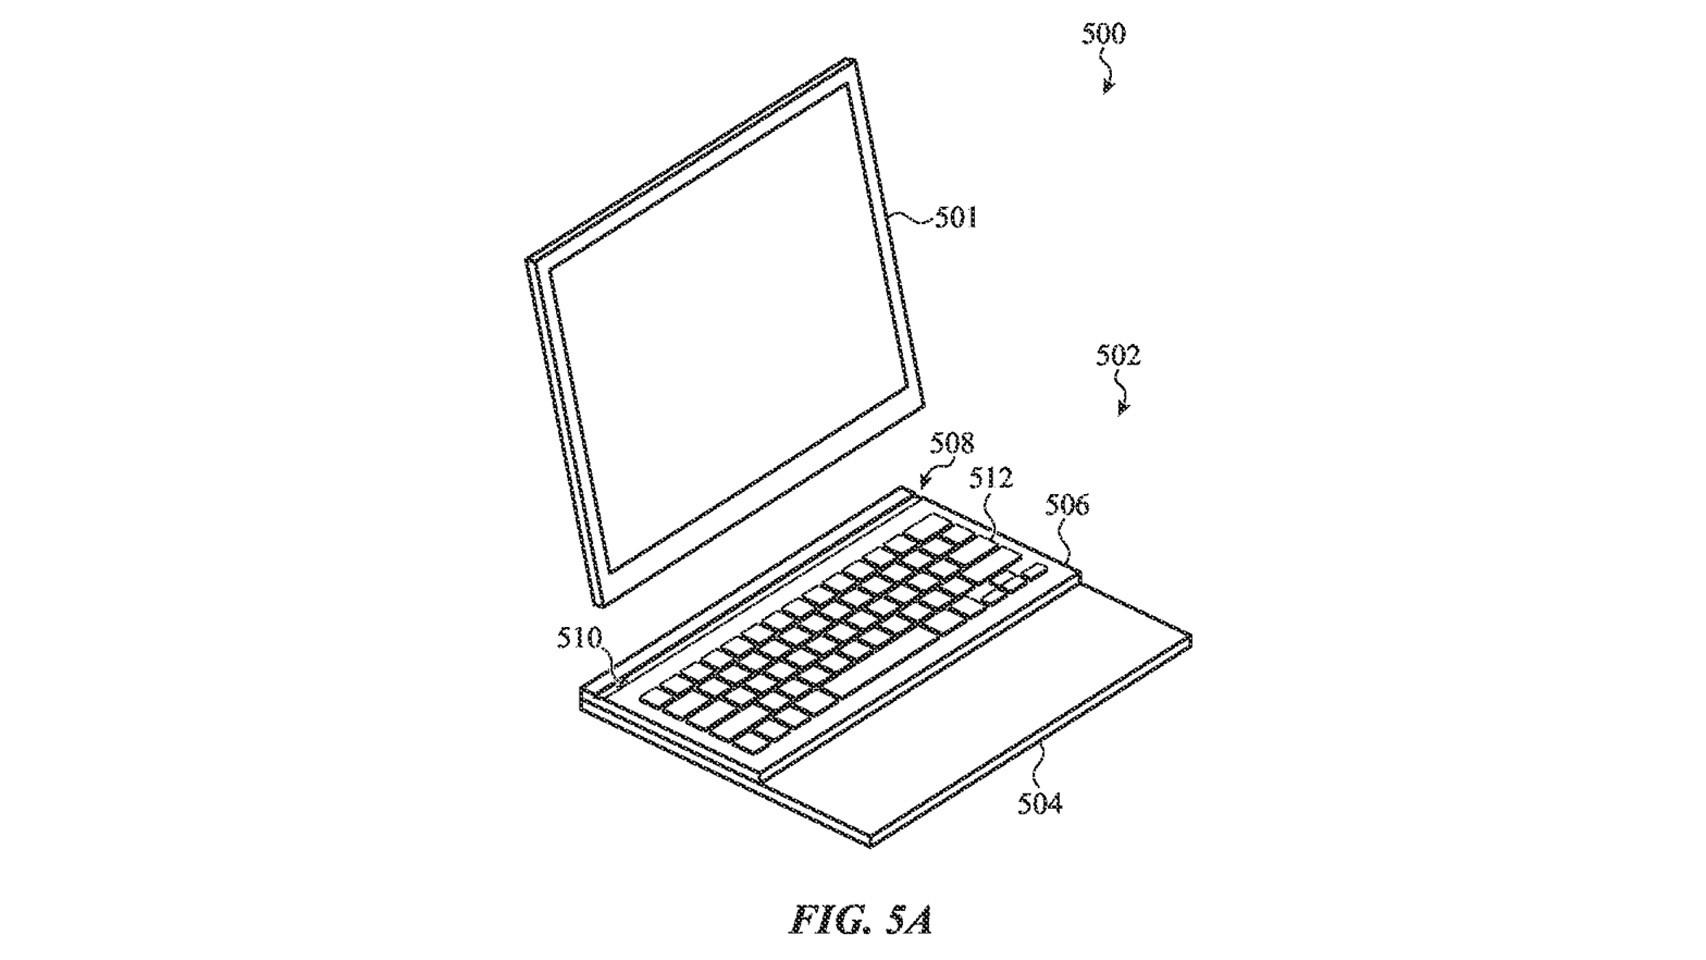 Figura de la patente con un iPad siendo acoplado a un teclado.